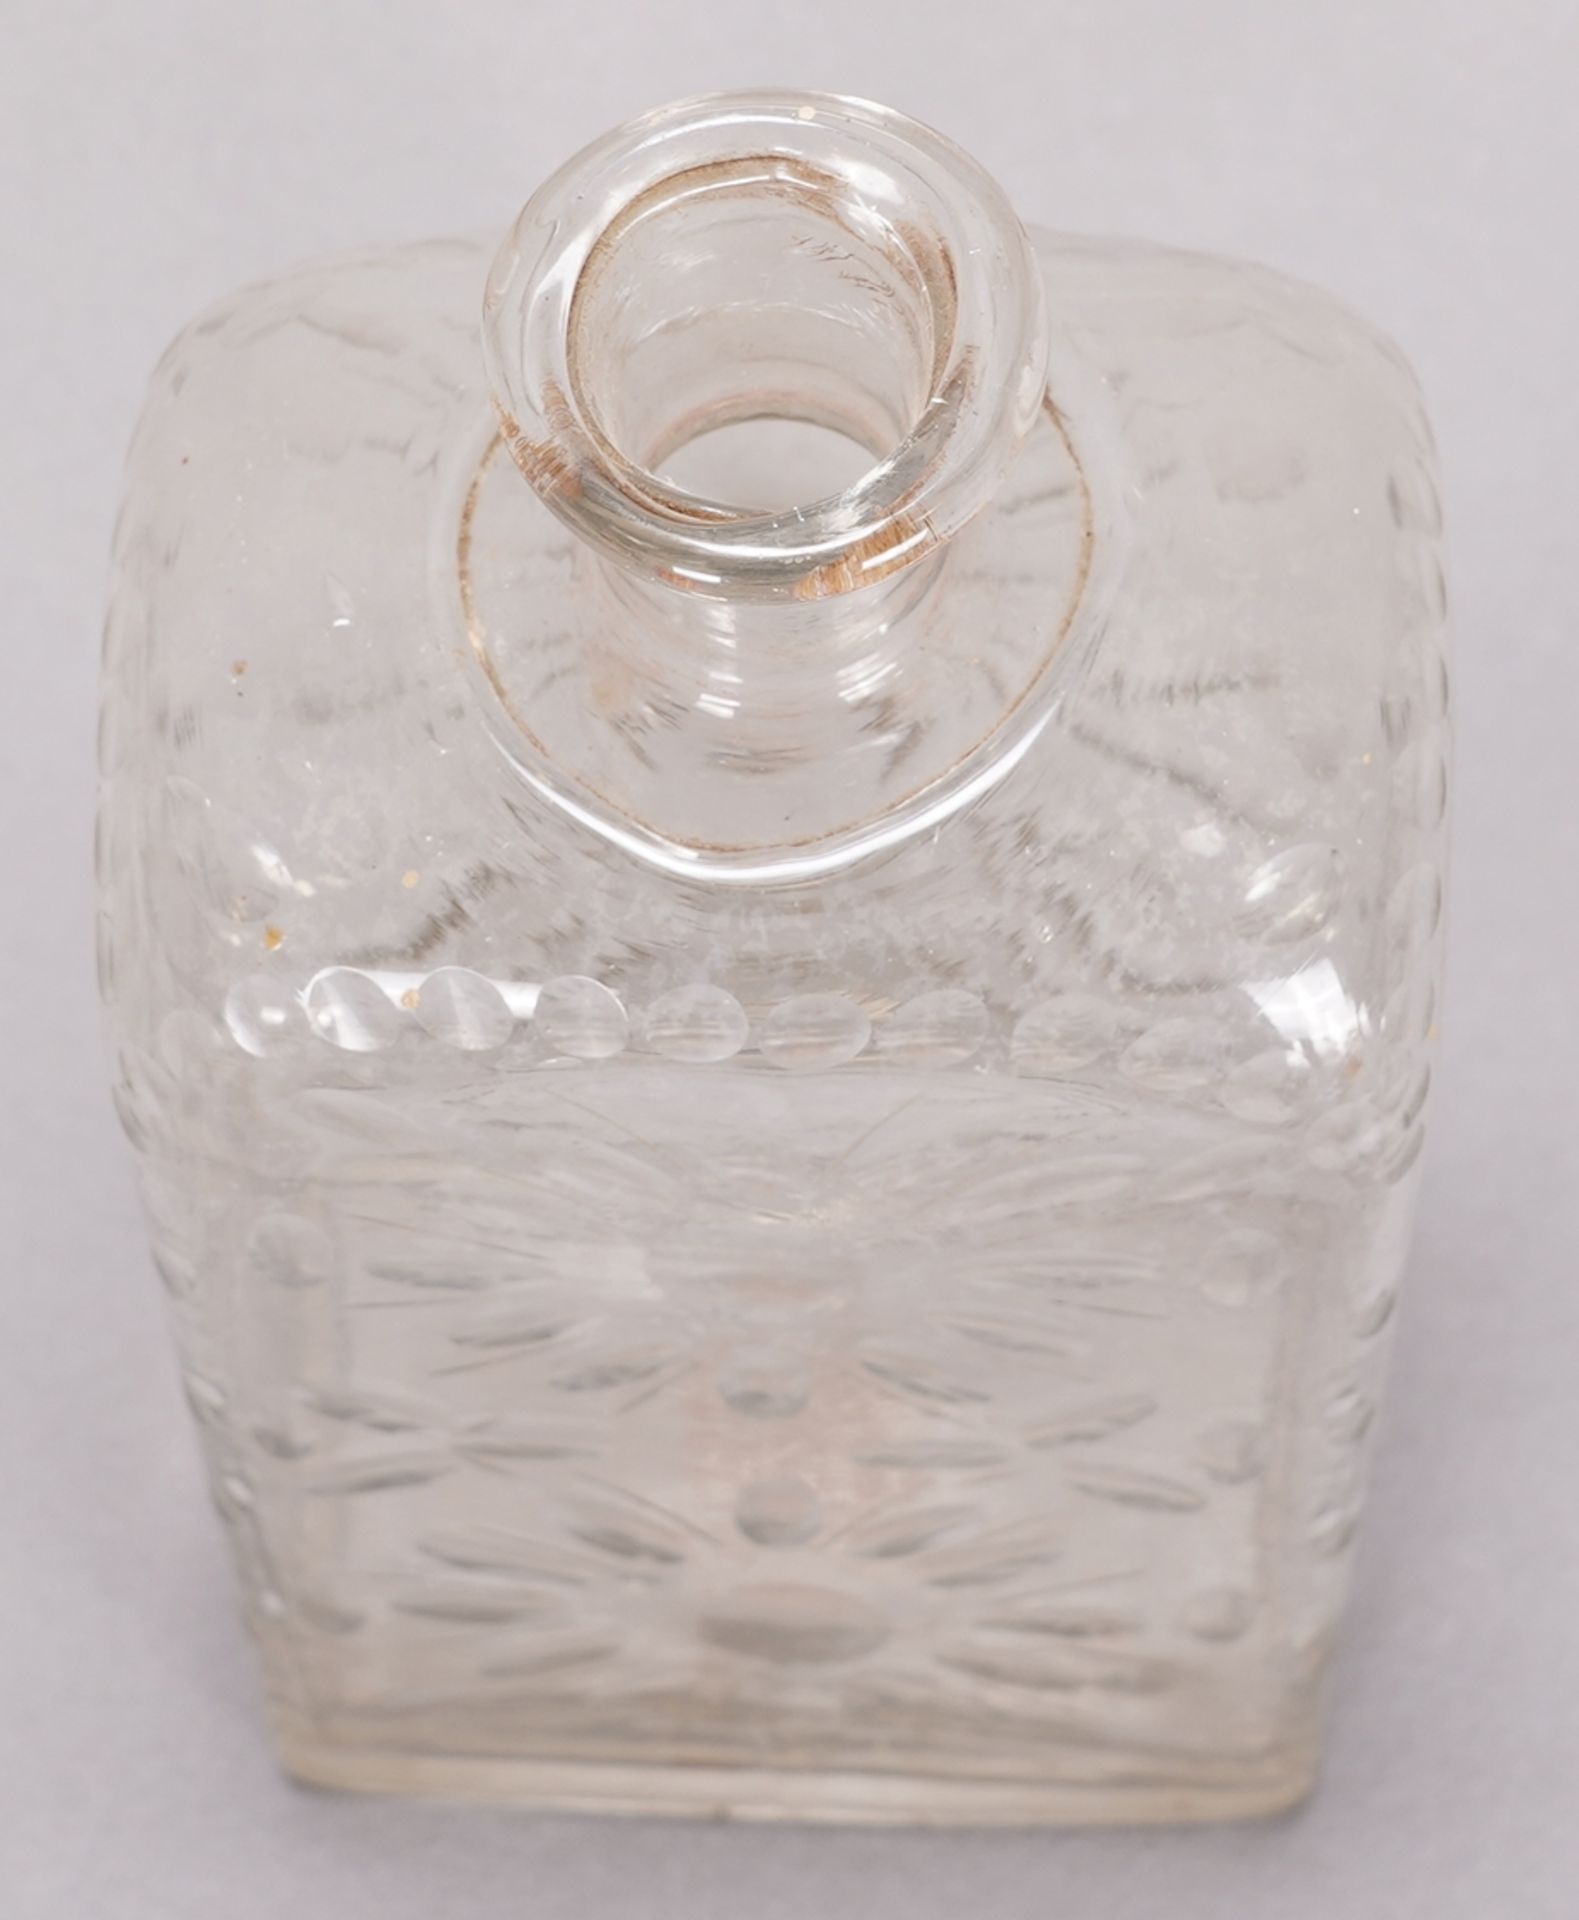 Bottle - Image 2 of 3